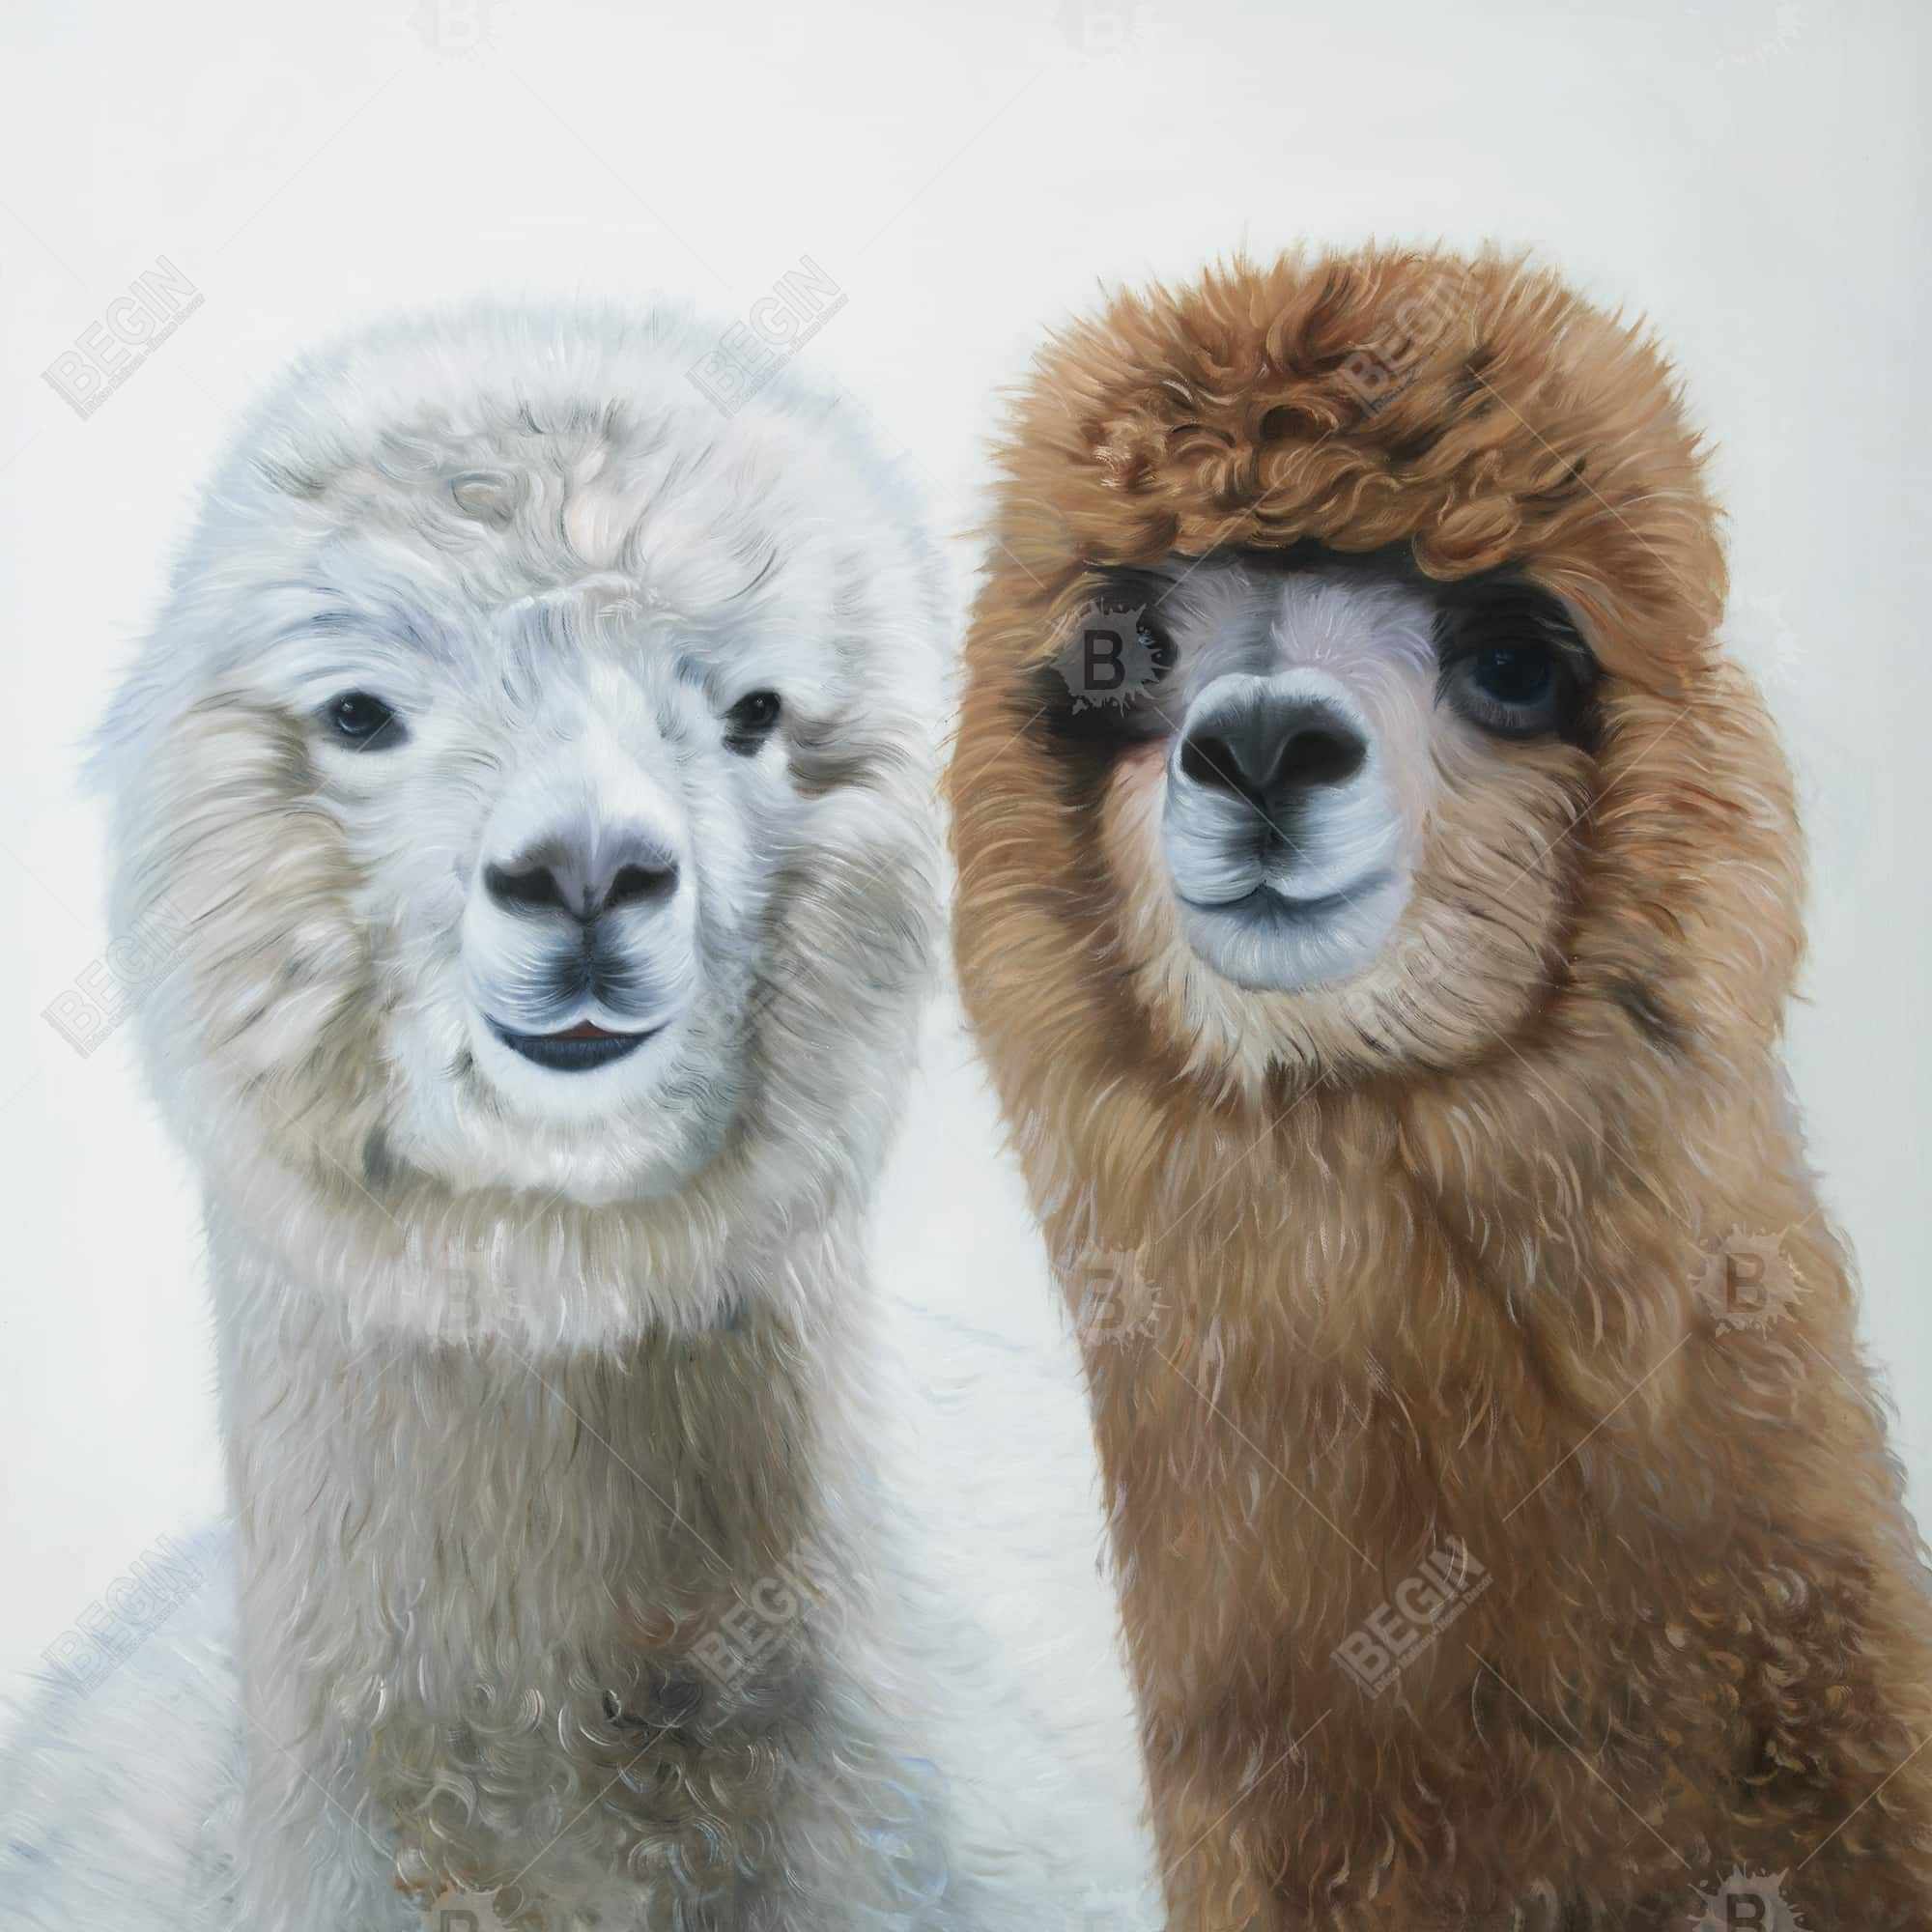 Two lamas